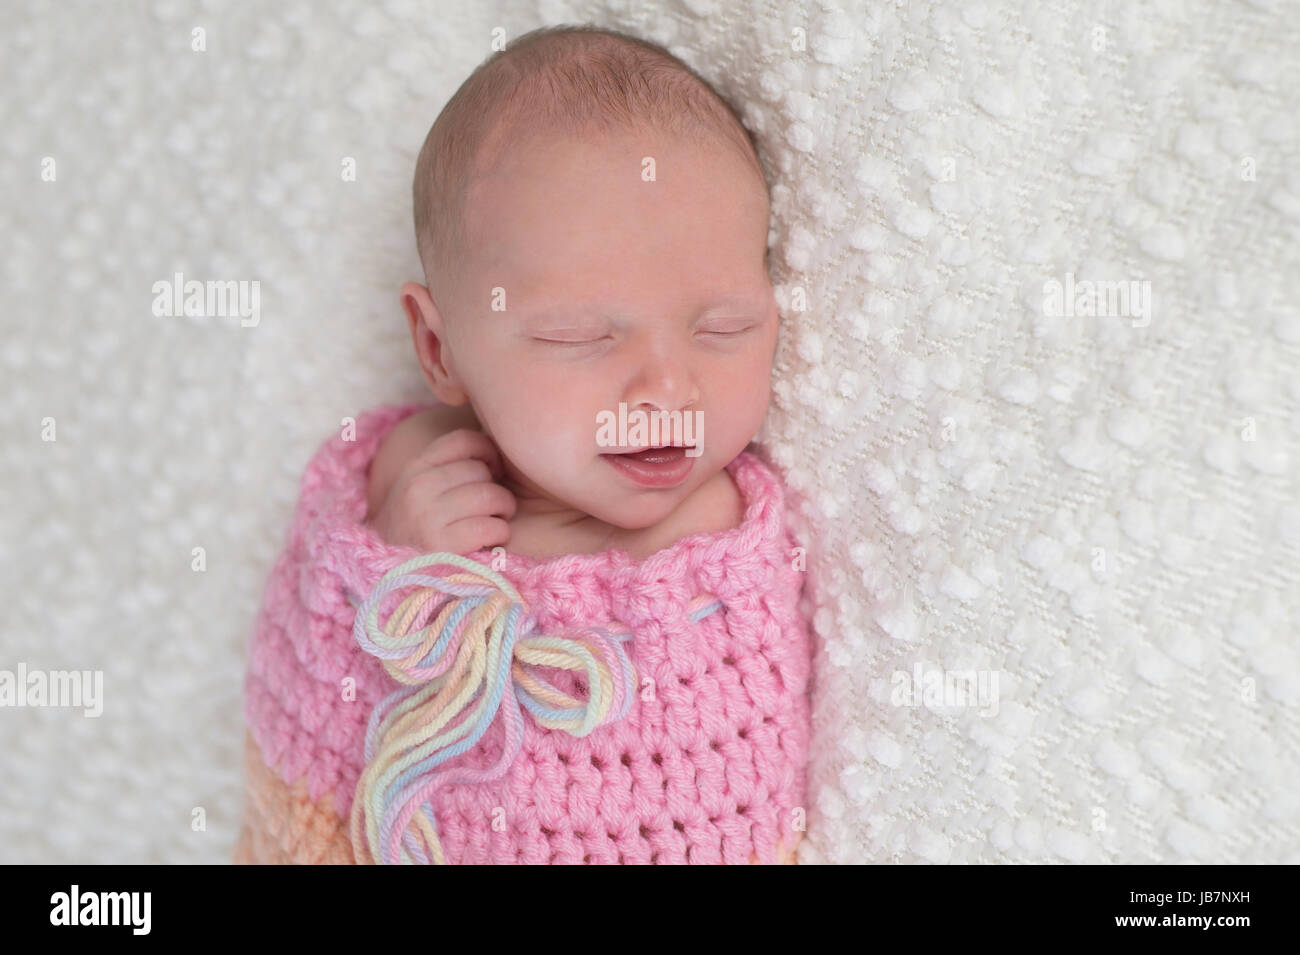 Kopfschuss von einem lächelnden drei Wochen alten neugeborenen Mädchen gebündelt in einem hellrosa, gehäkelt, kuscheln Sack. Sie liegt auf einer weißen, Bouncle Decke. Stockfoto